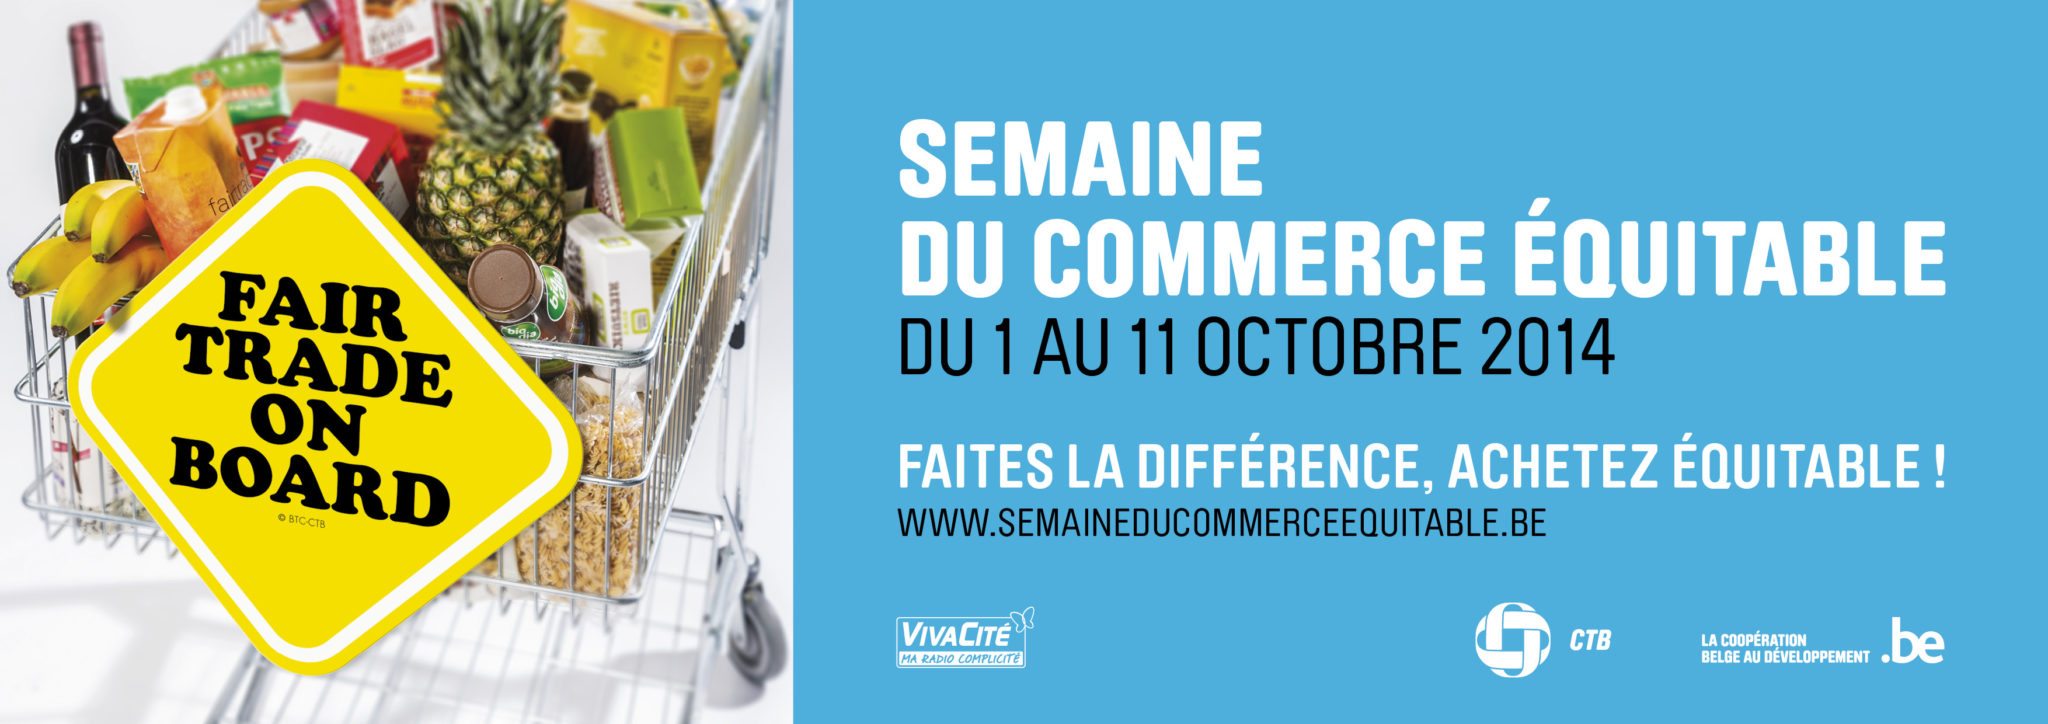 Affiche_Semaine_du_commerce_equitable.jpg